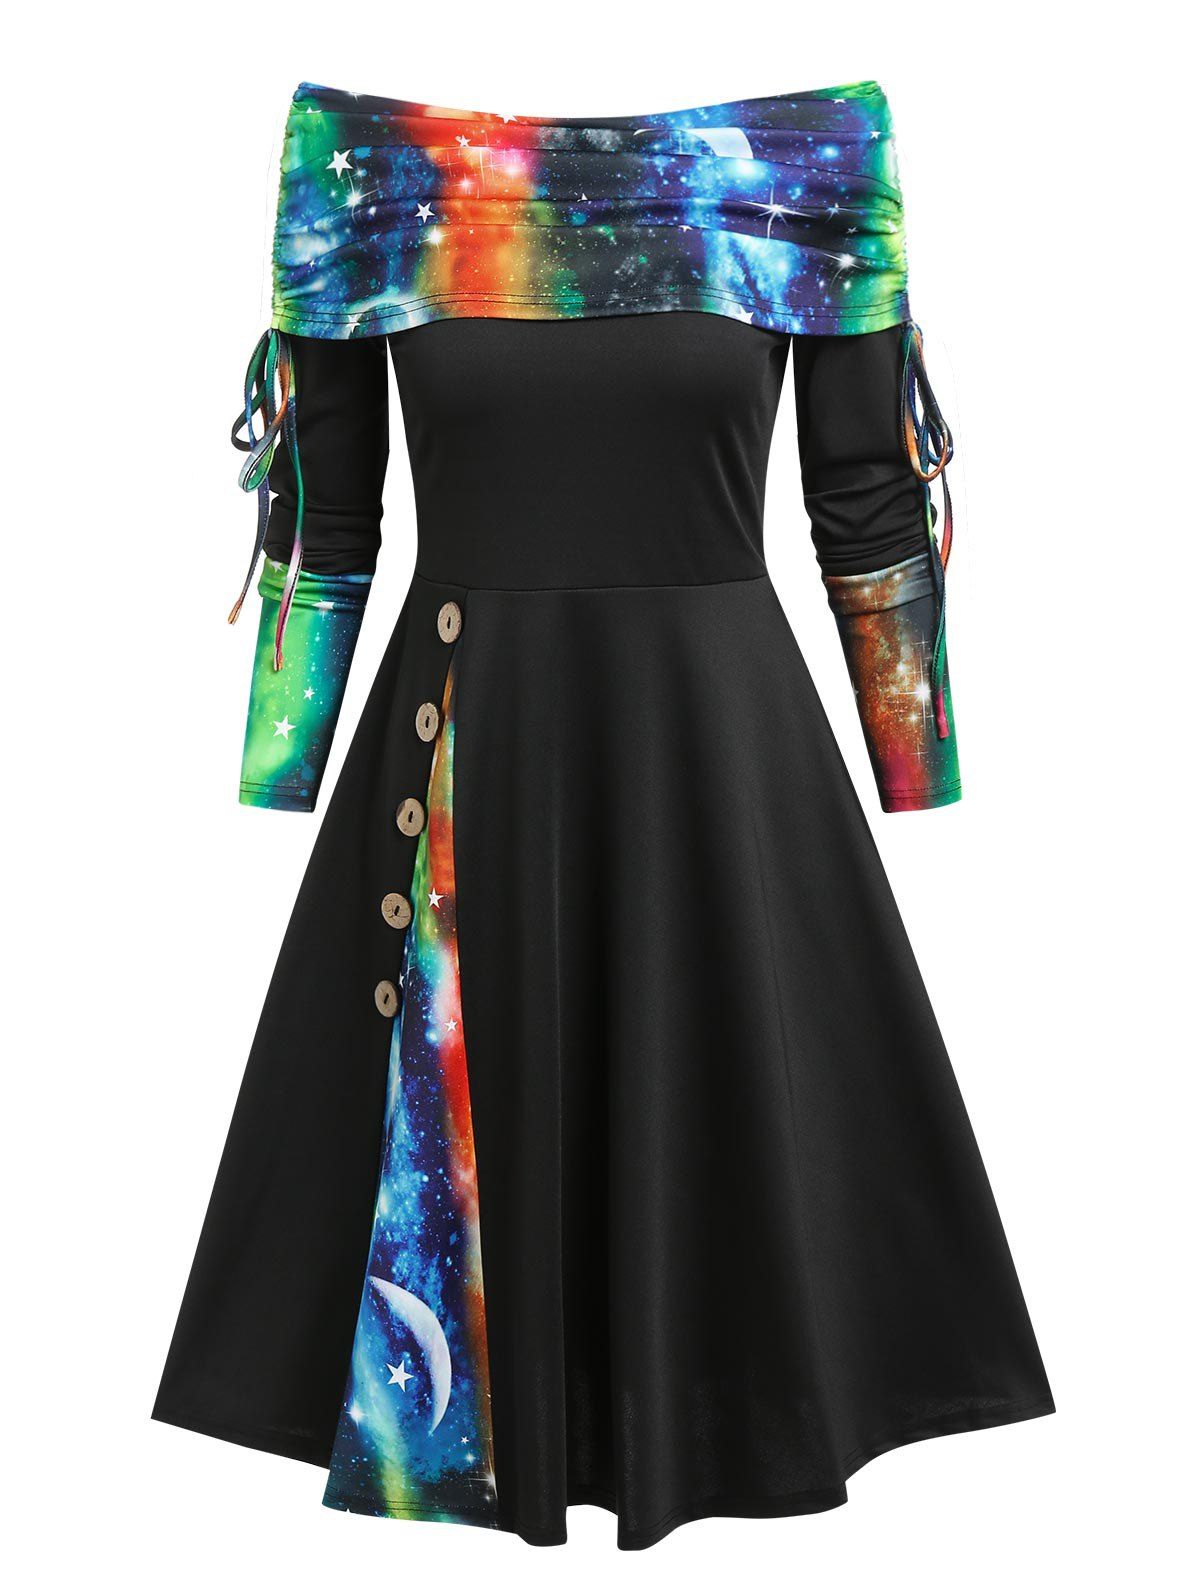 Cinched Off The Shoulder 3D Galaxy Print Dress - BLACK L